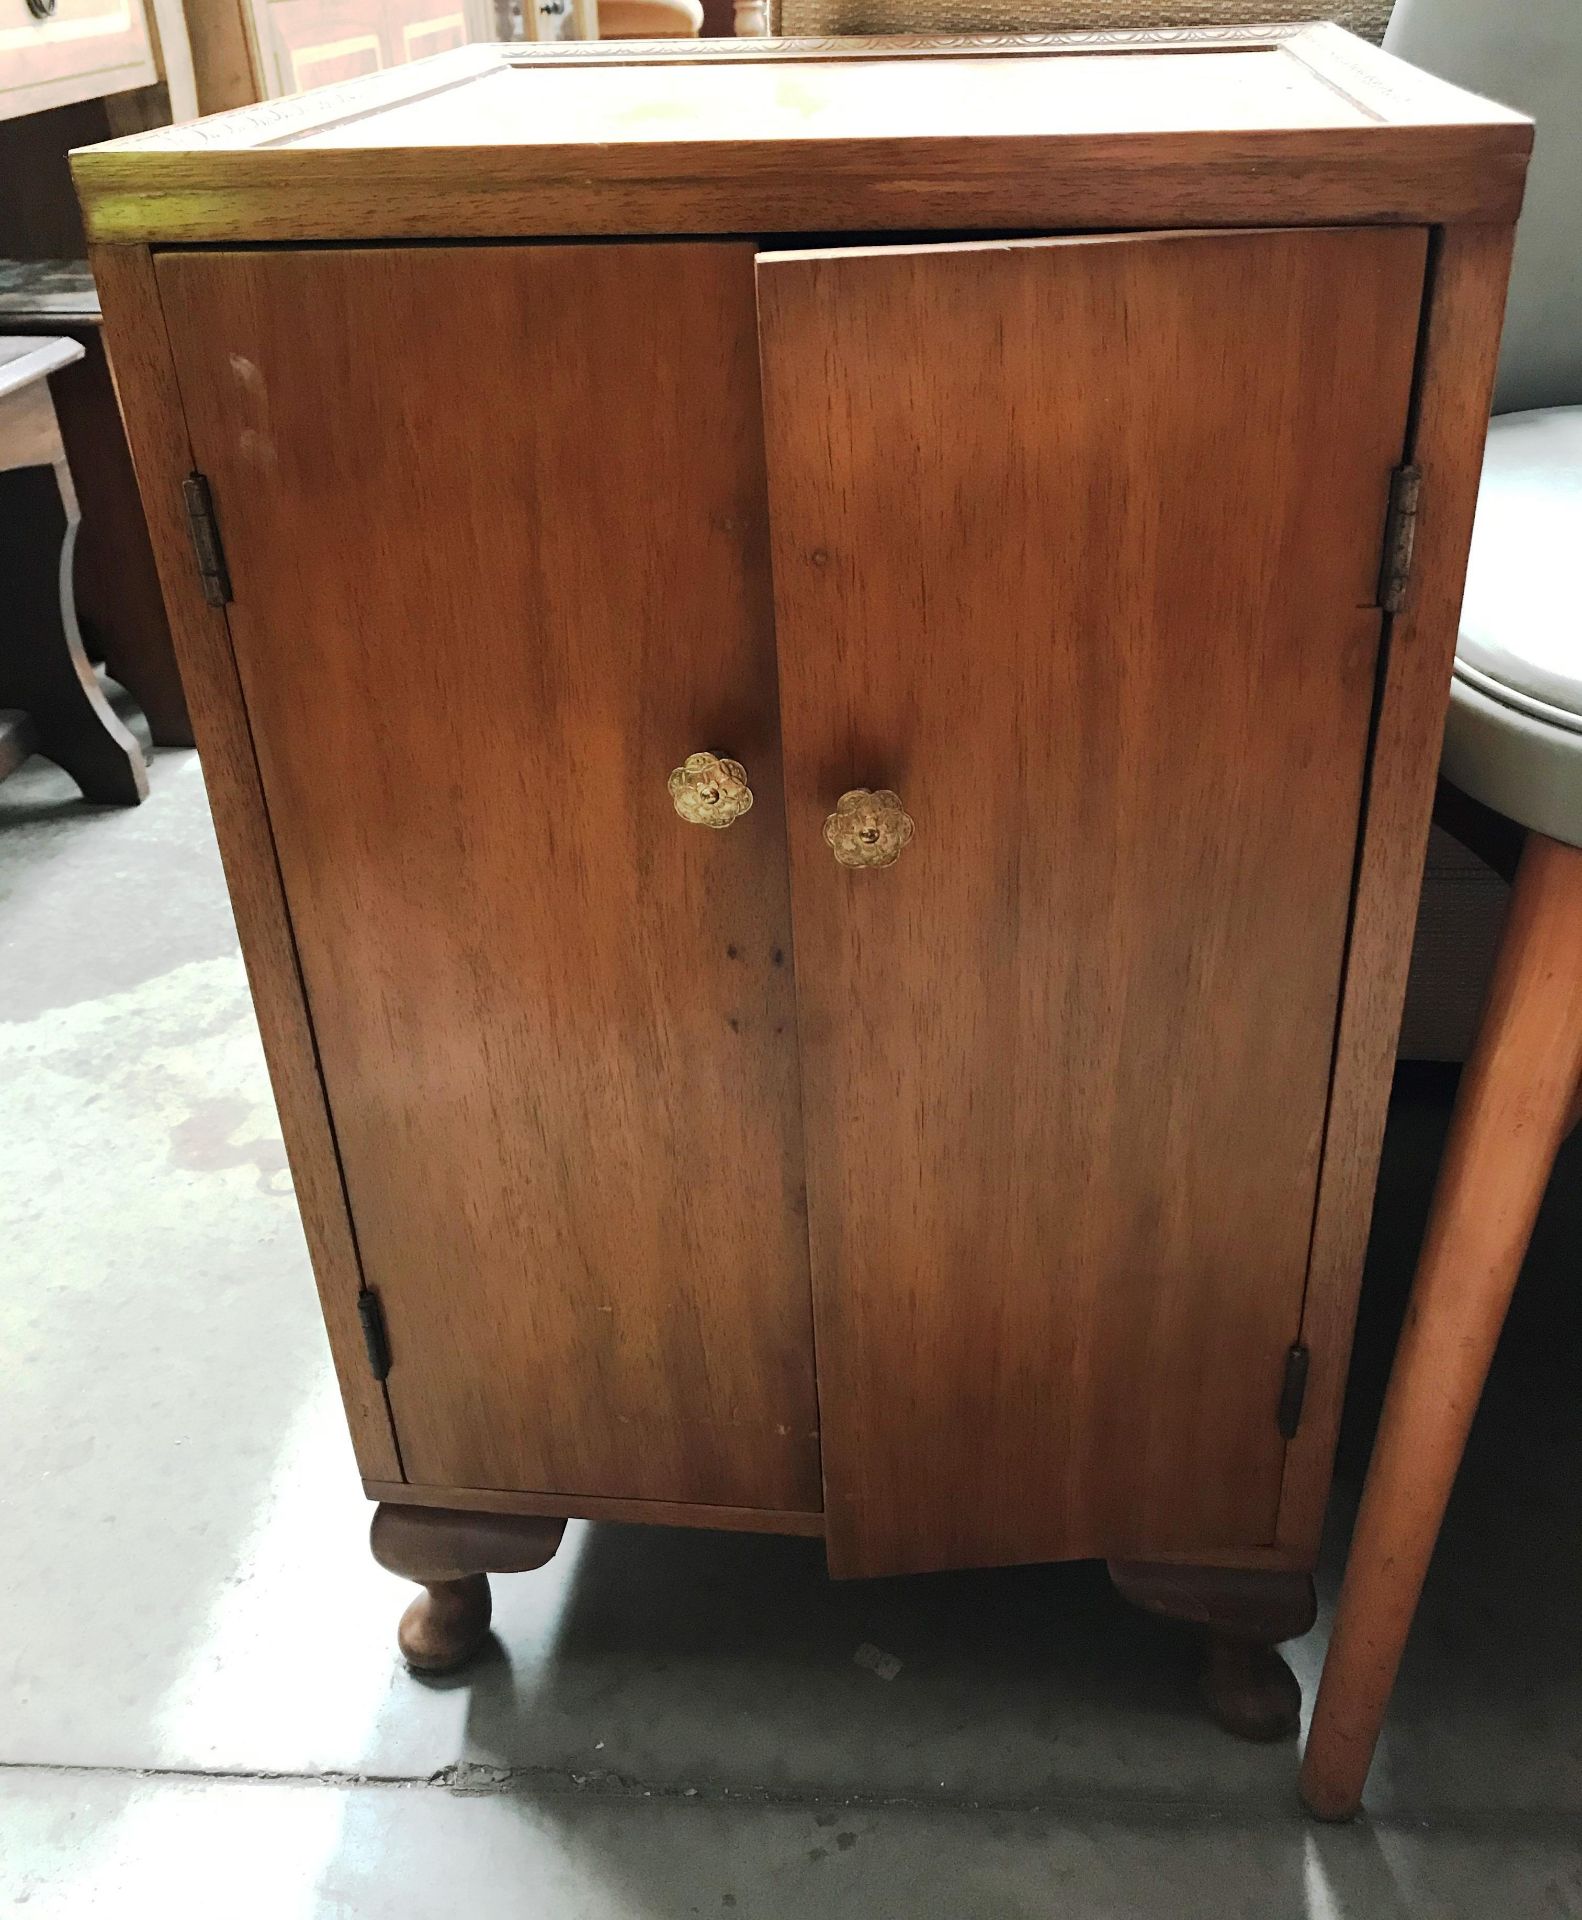 A light oak single drawer single door bedside cabinet,